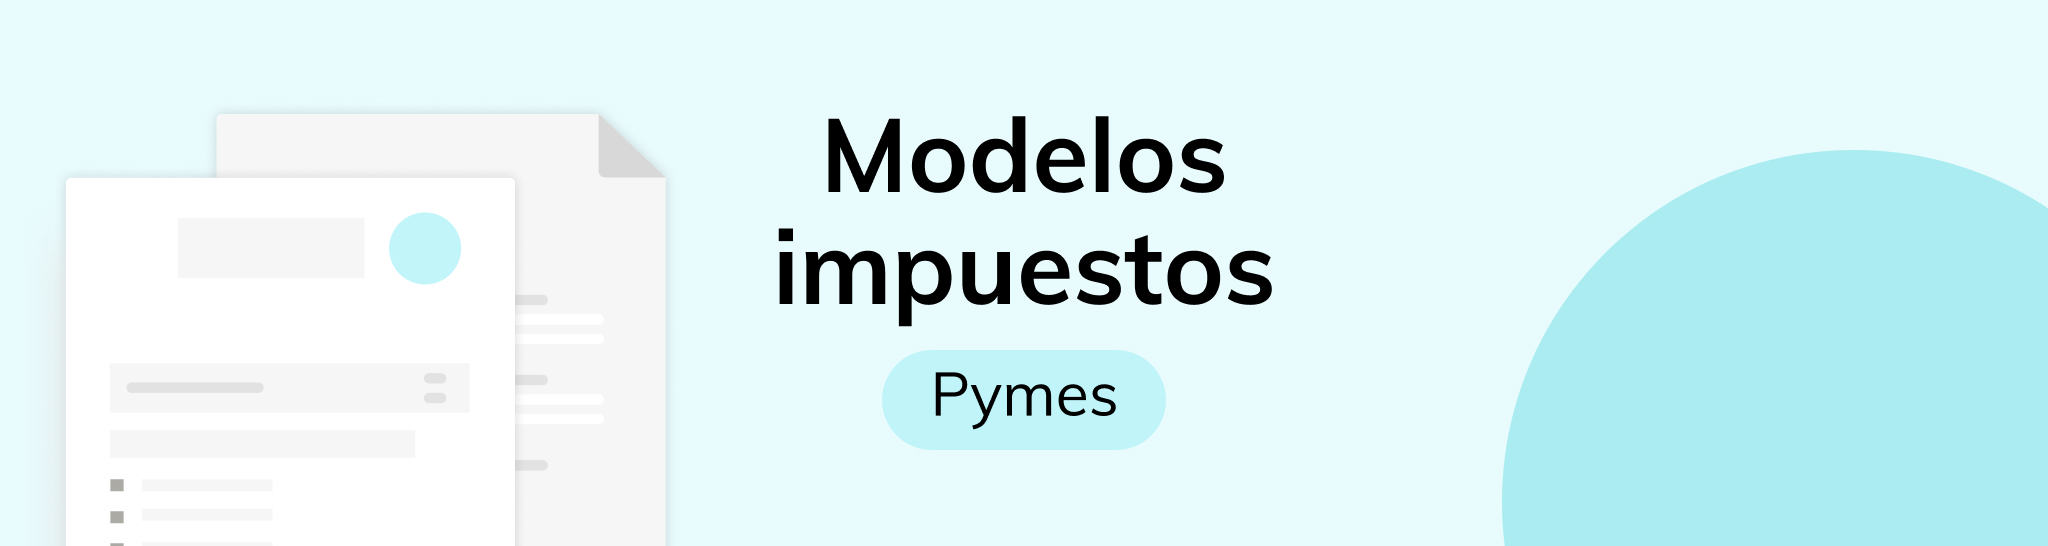 Modelos impuestos obligatorios para la Pyme